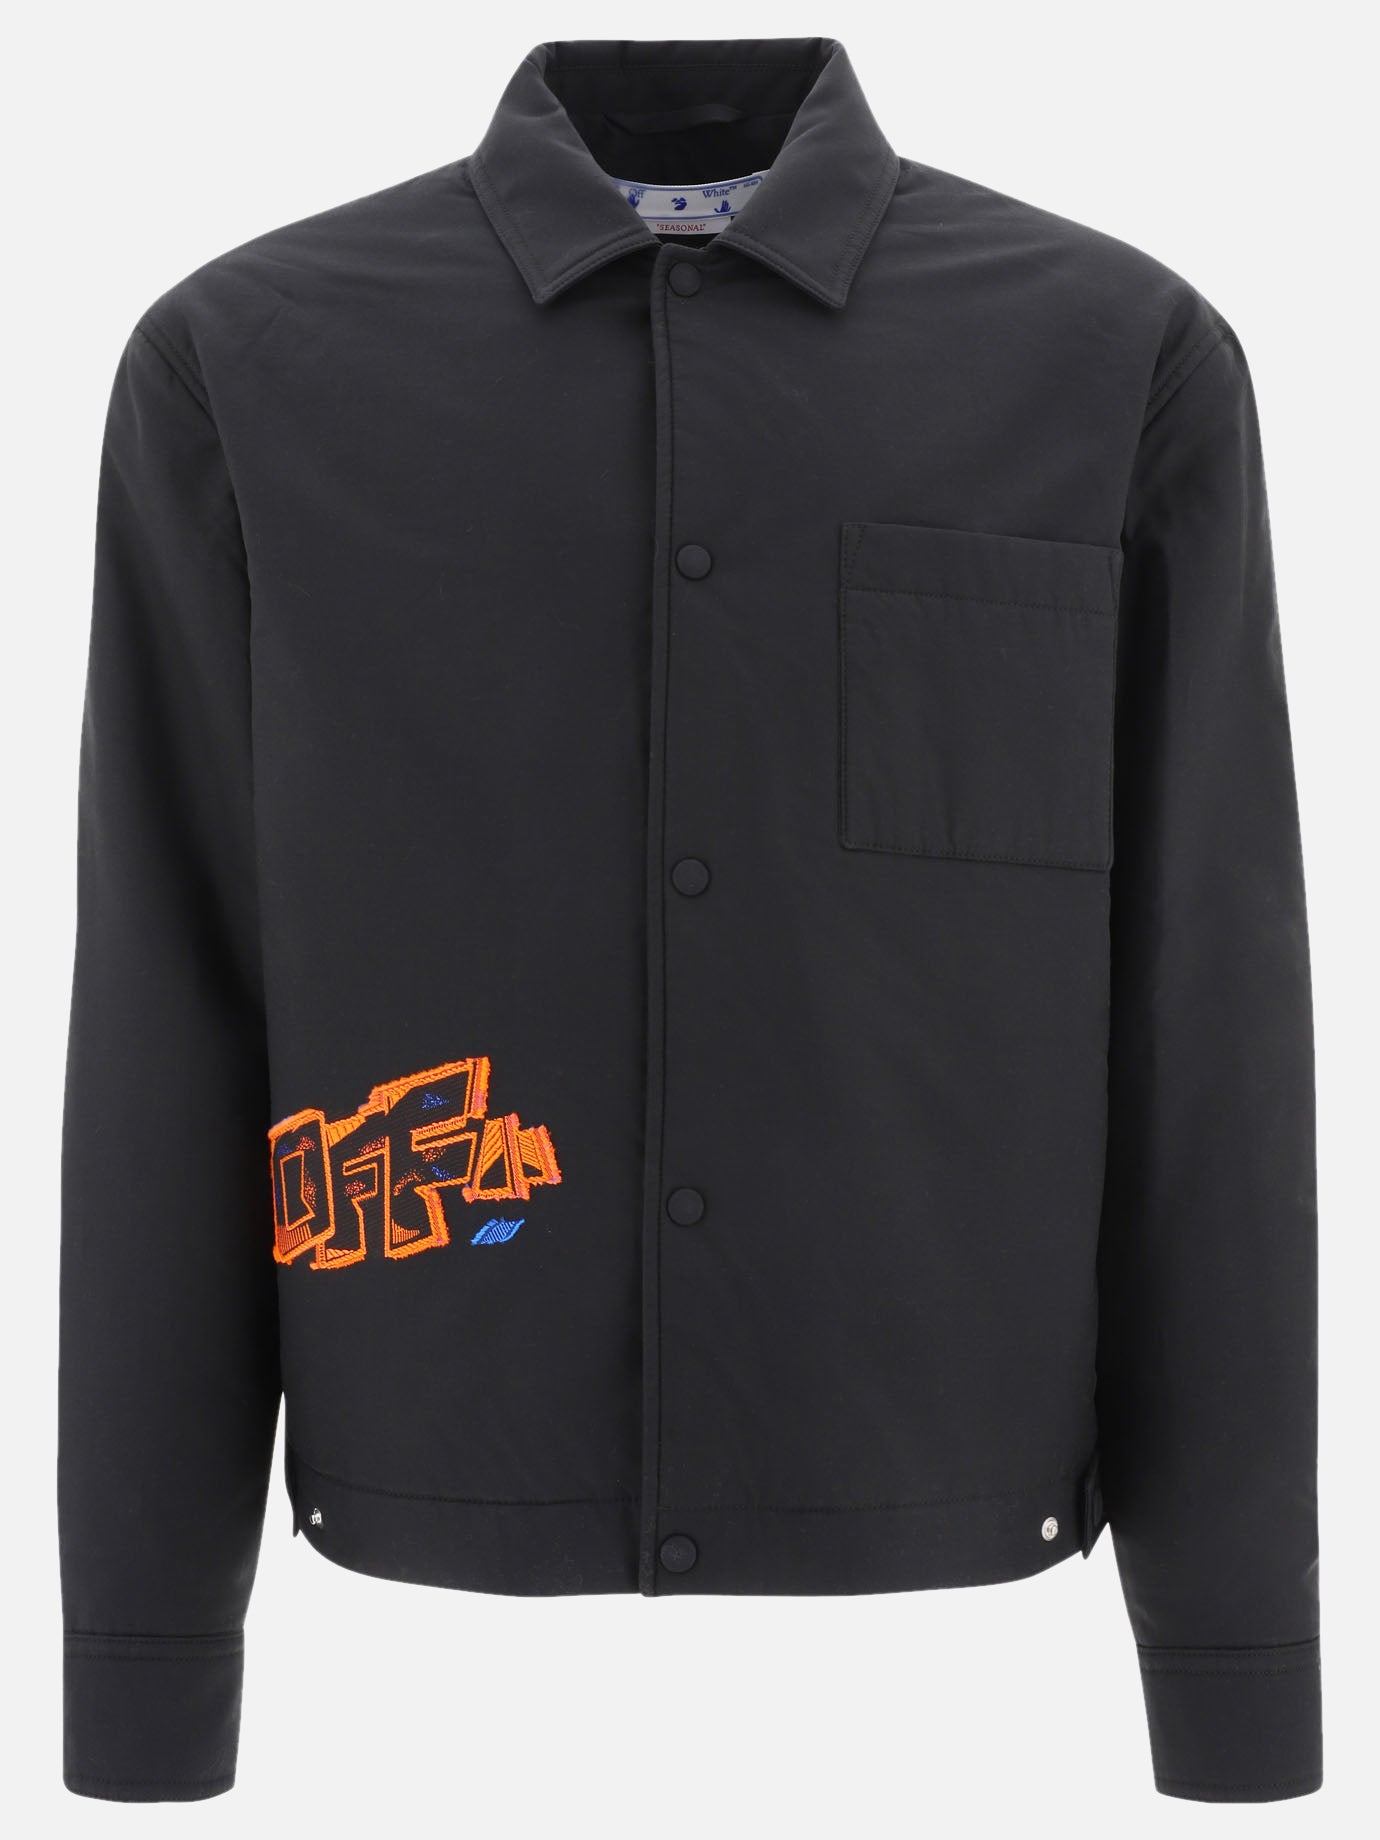 "Graffiti" overshirt jacket